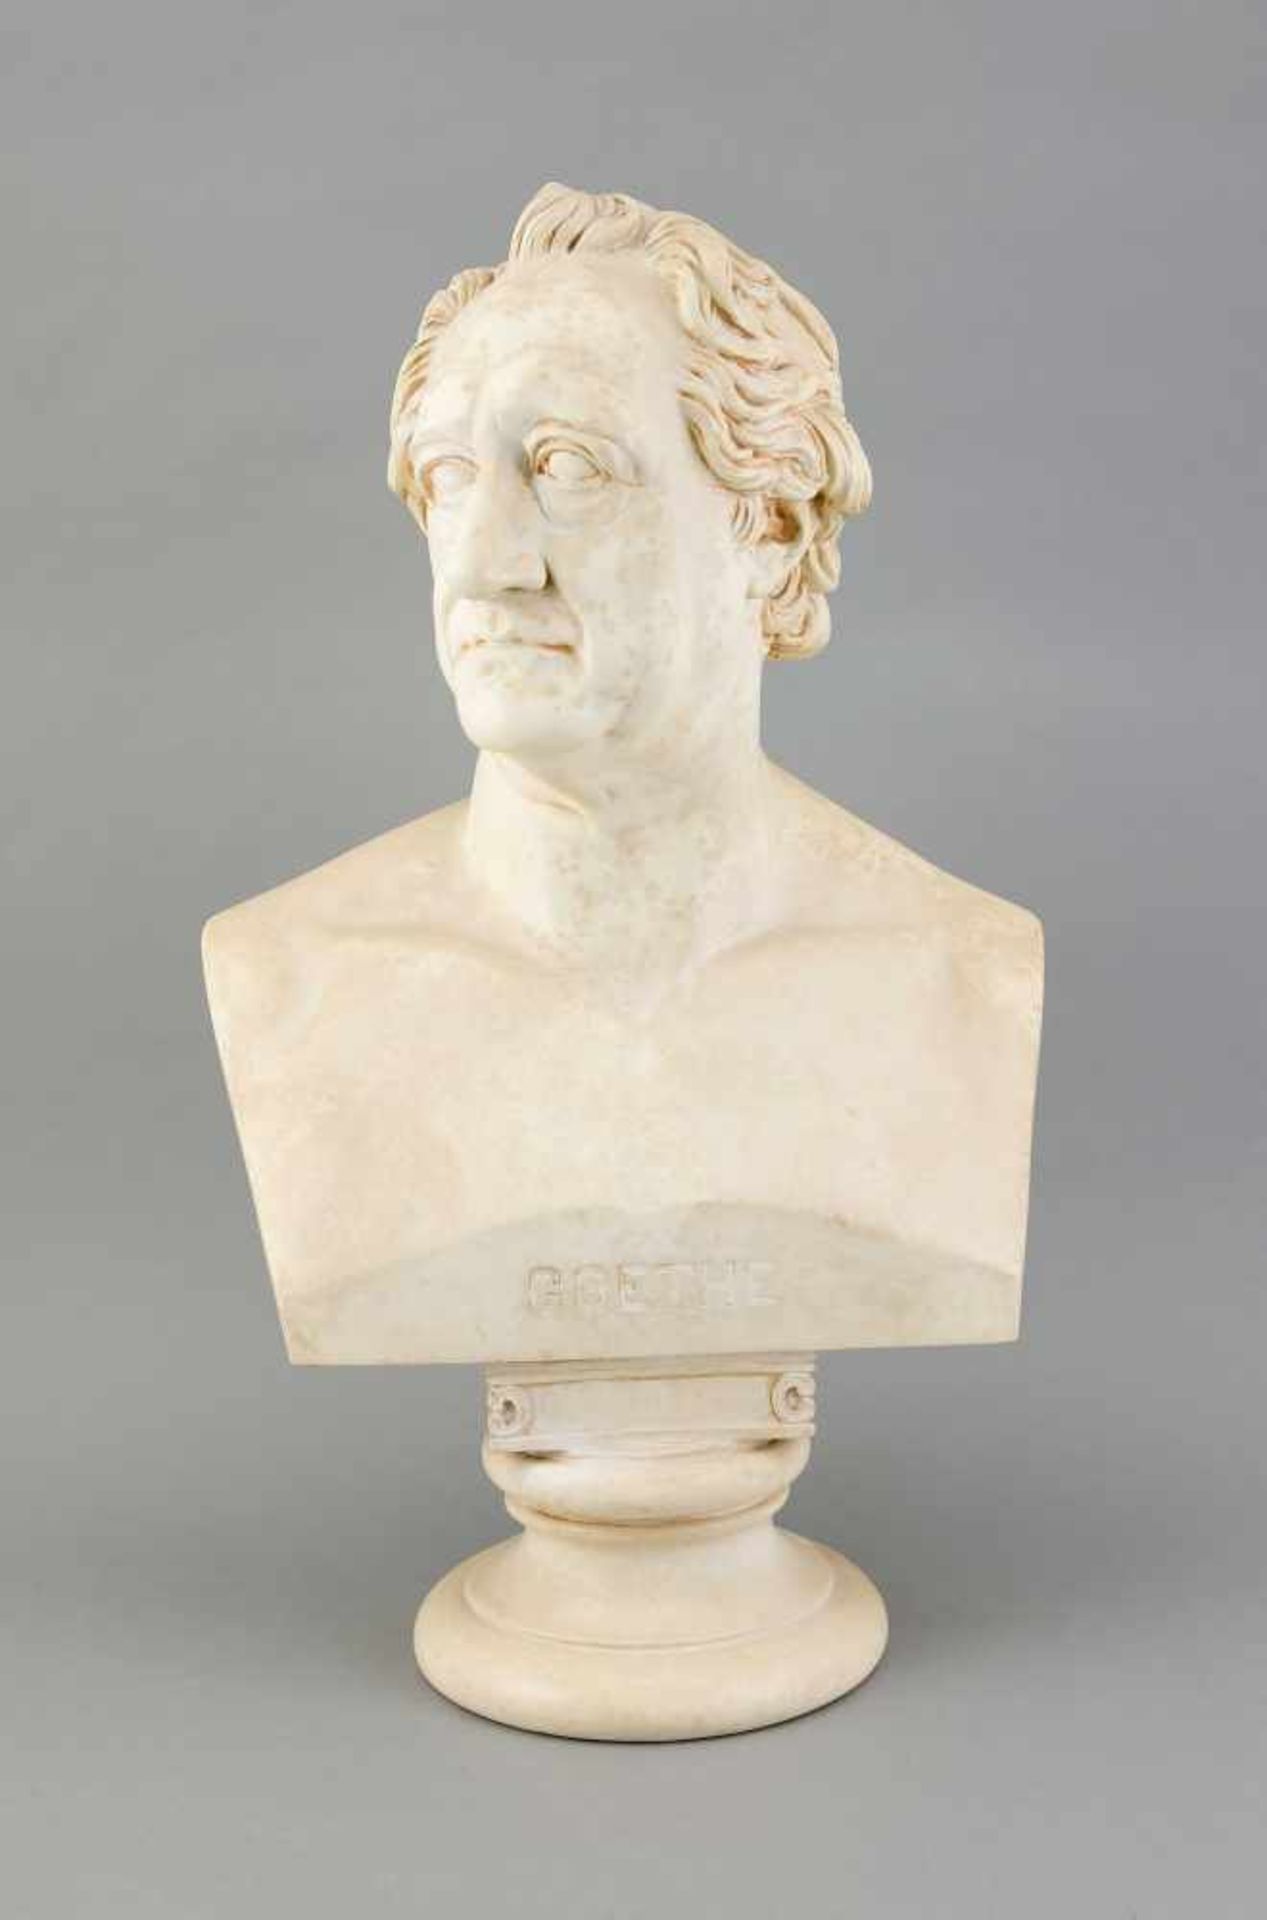 Christian Daniel Rauch (1777-1857) nach, große Portraitbüste von Goethe, marmorimitierende